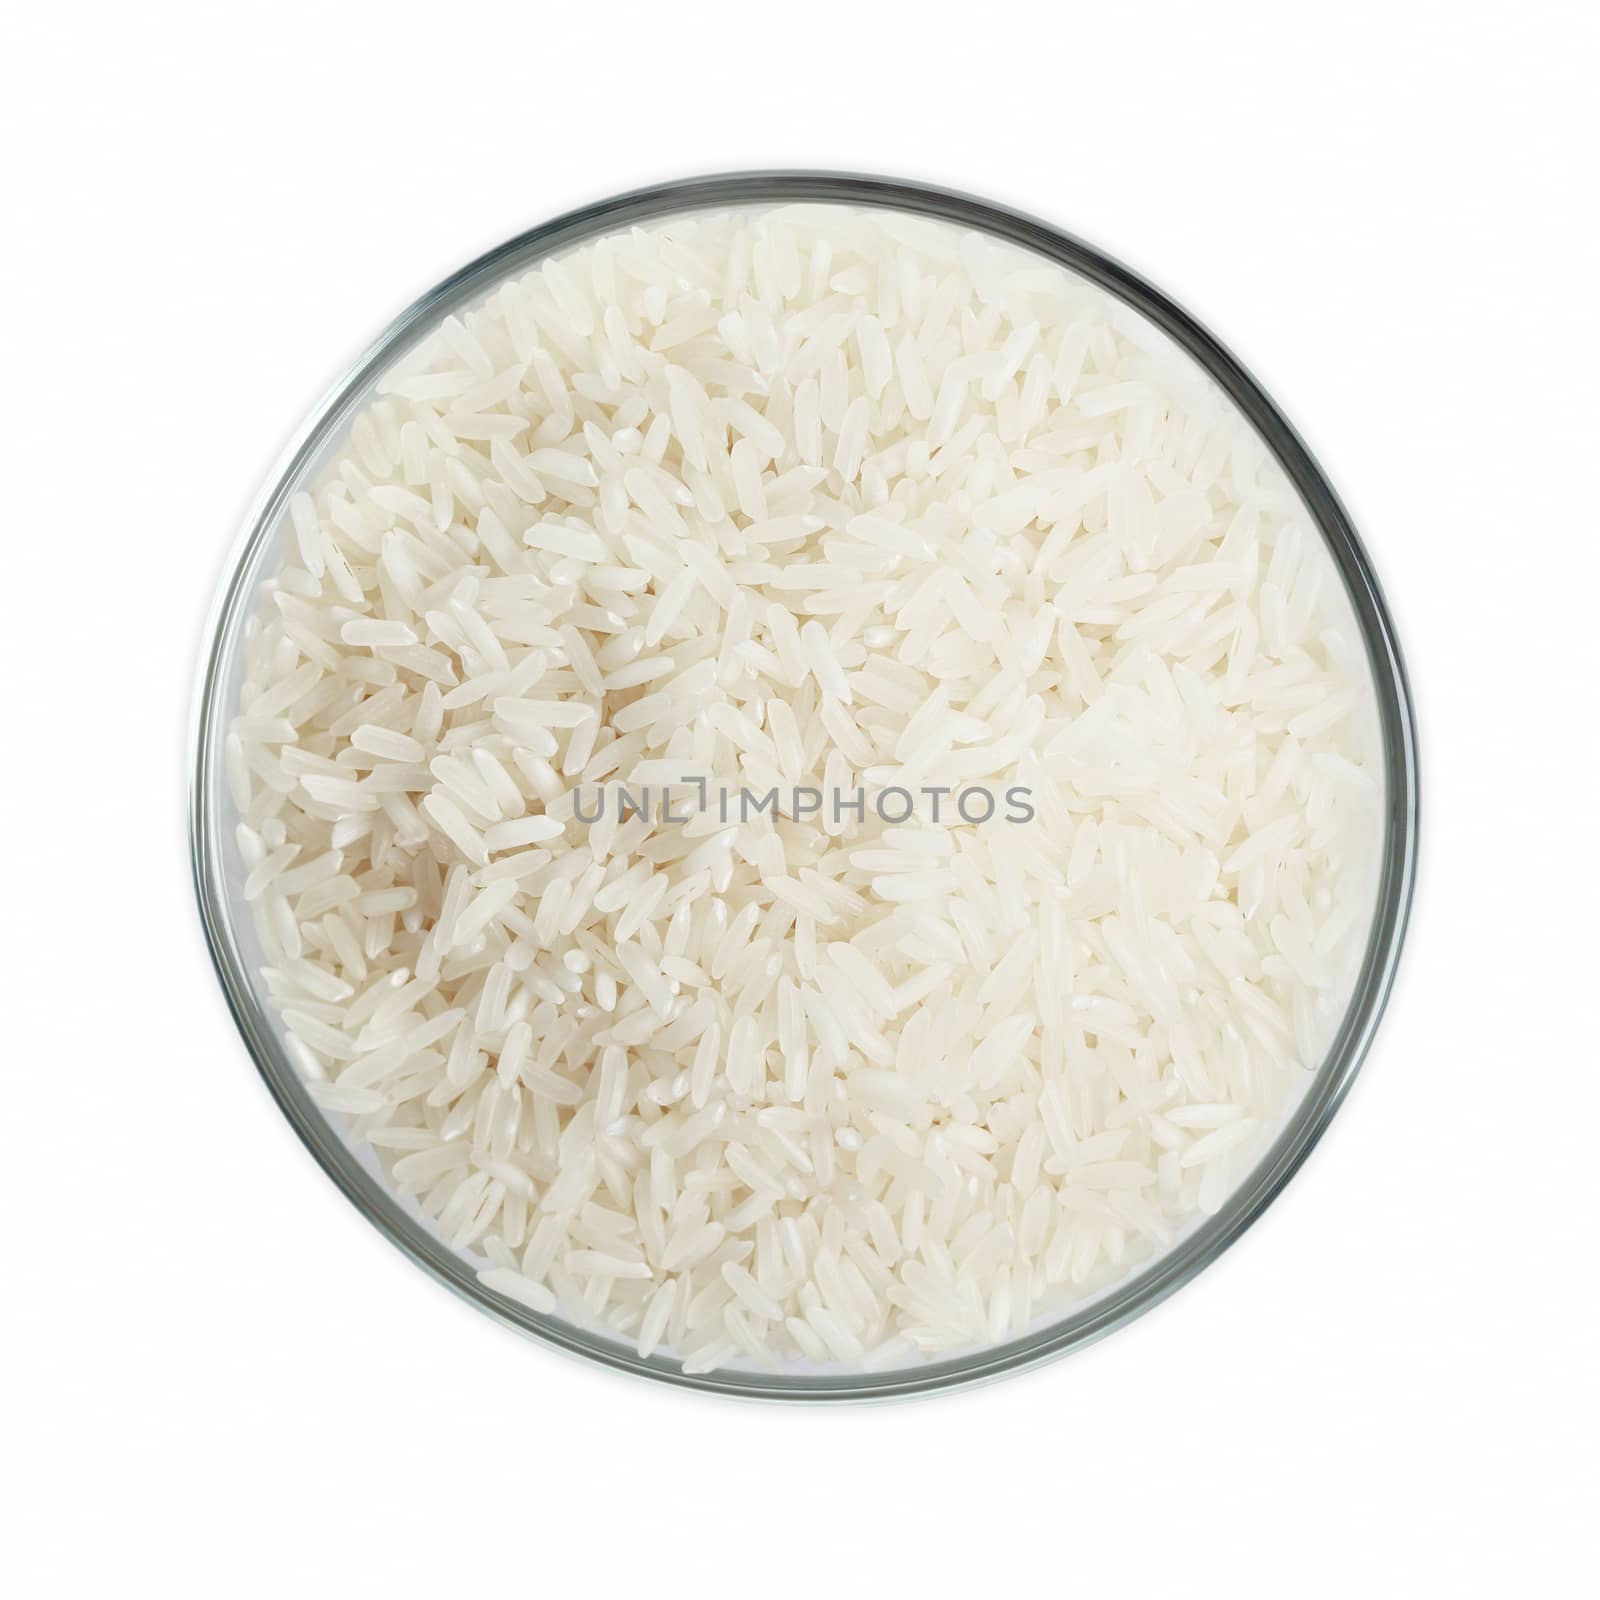 White rice in glass bowl  by marynamyshkovska